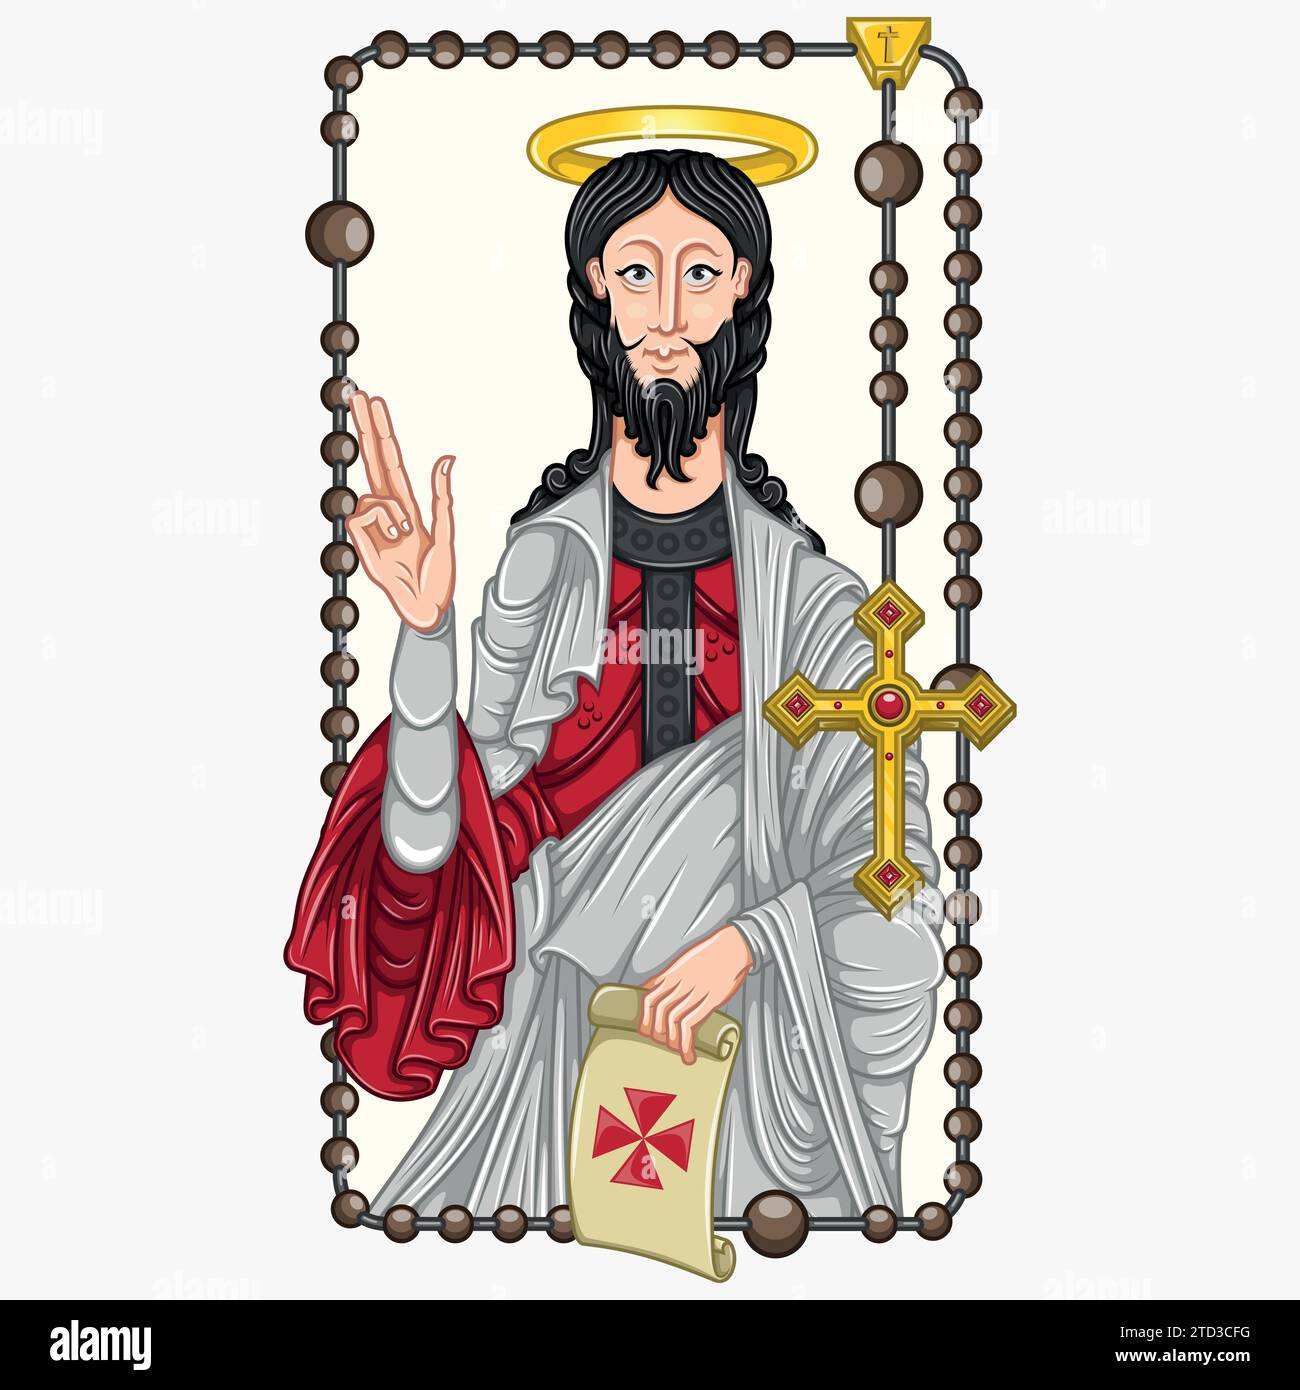 Conception vectorielle de l'apôtre Saint James avec le vieux parchemin, l'apôtre Saint James avec le rosaire chrétien comme cadre Illustration de Vecteur